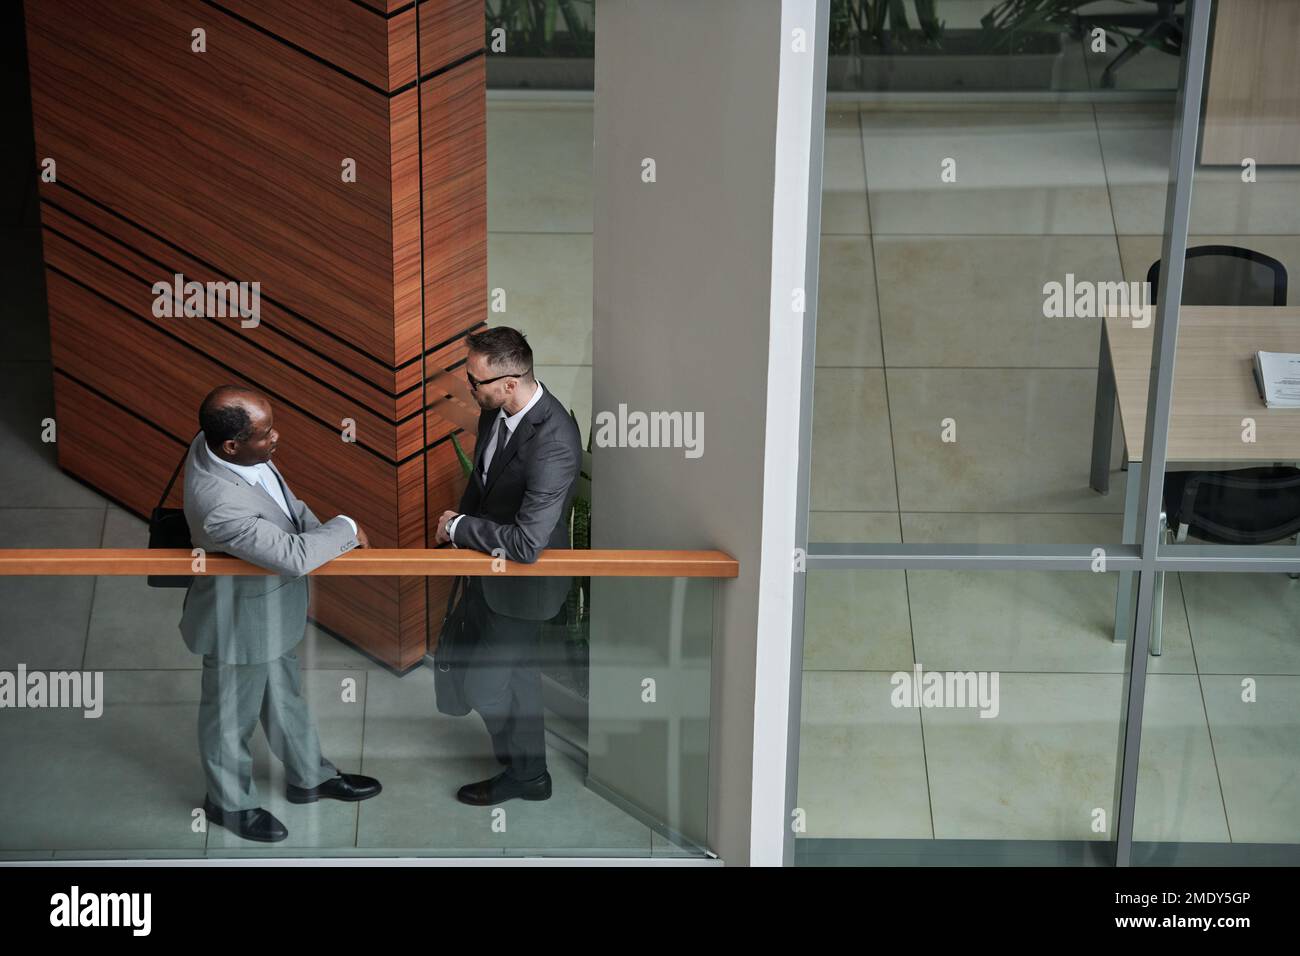 Teil der Inneneinrichtung des modernen Businesscenters mit zwei interkulturellen männlichen Angestellten in formeller Kleidung, die sich beim Treffen am Geländer unterhalten Stockfoto